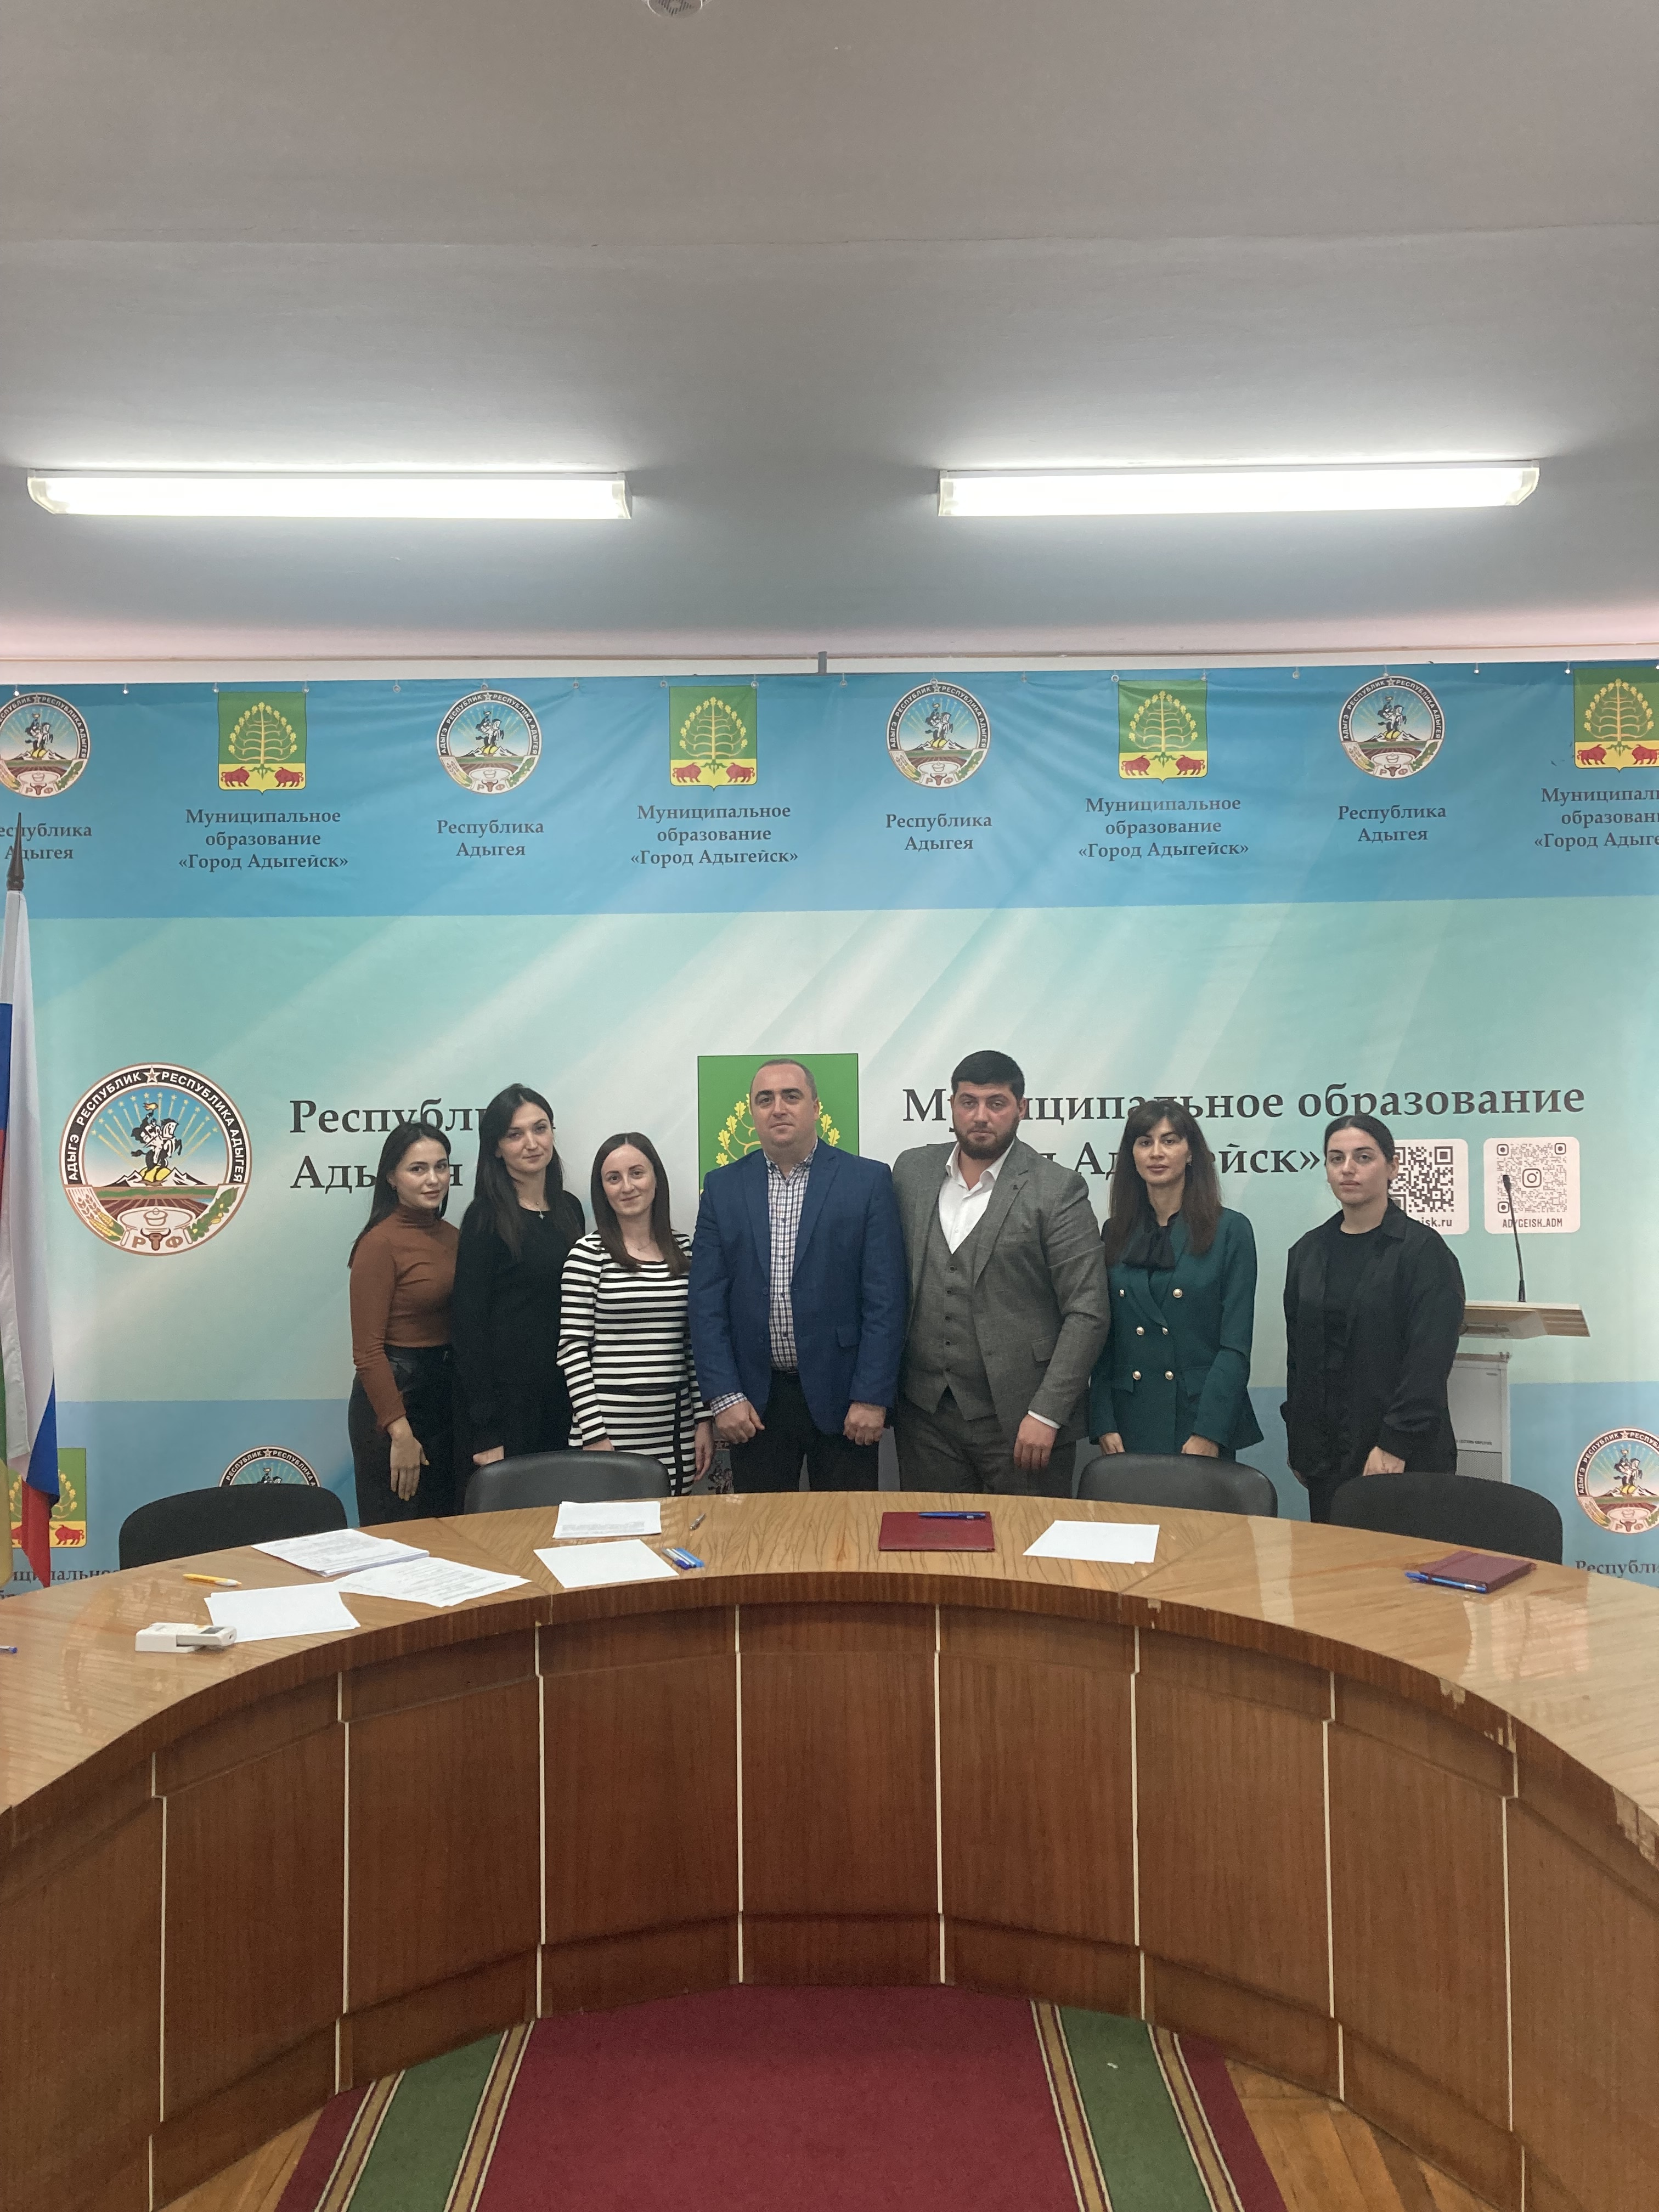 Сегодня состоялось организационное заседание Молодёжной избирательной комиссии города Адыгейска.